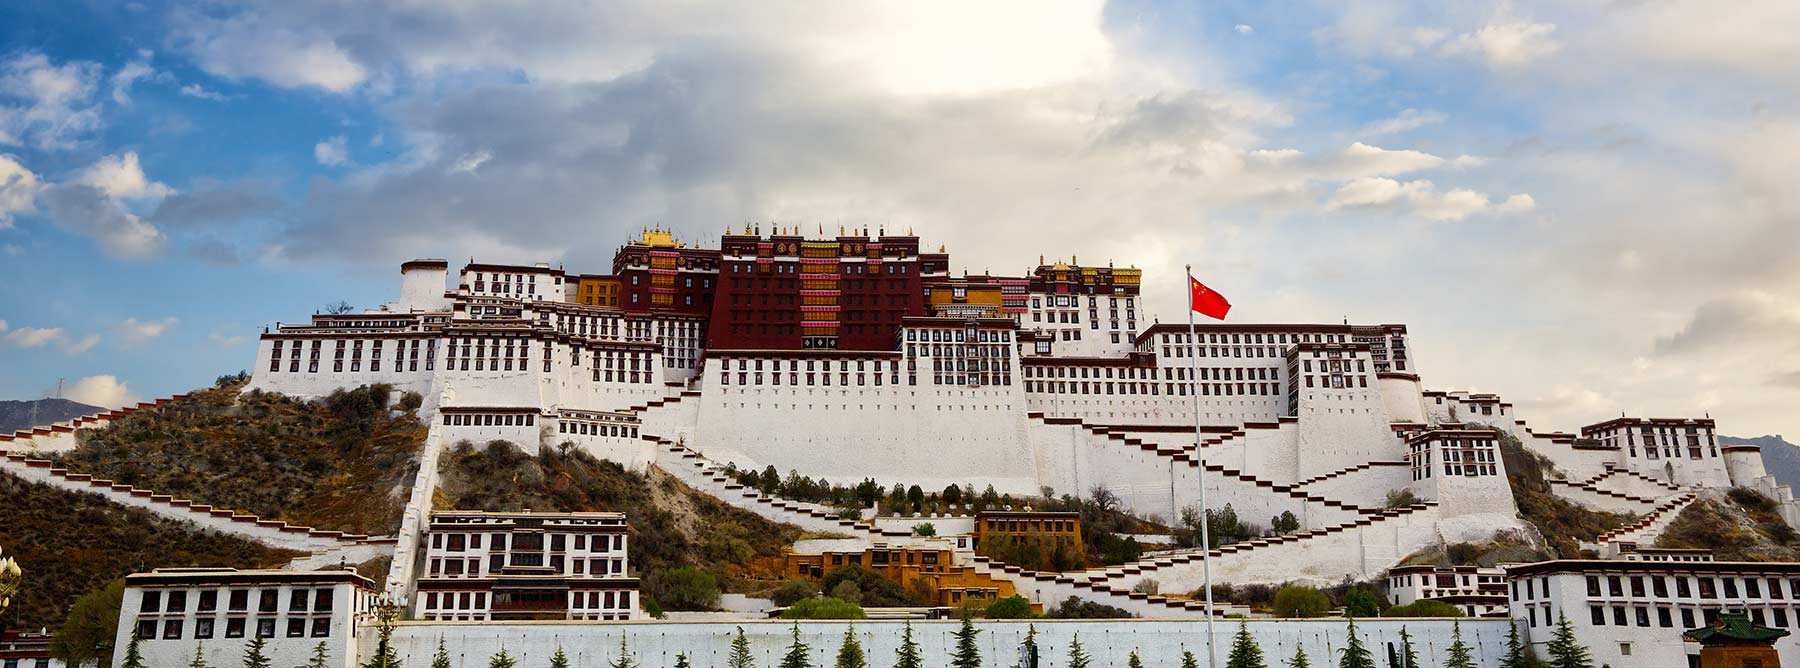 12 Days Tibet Tour From Chengdu